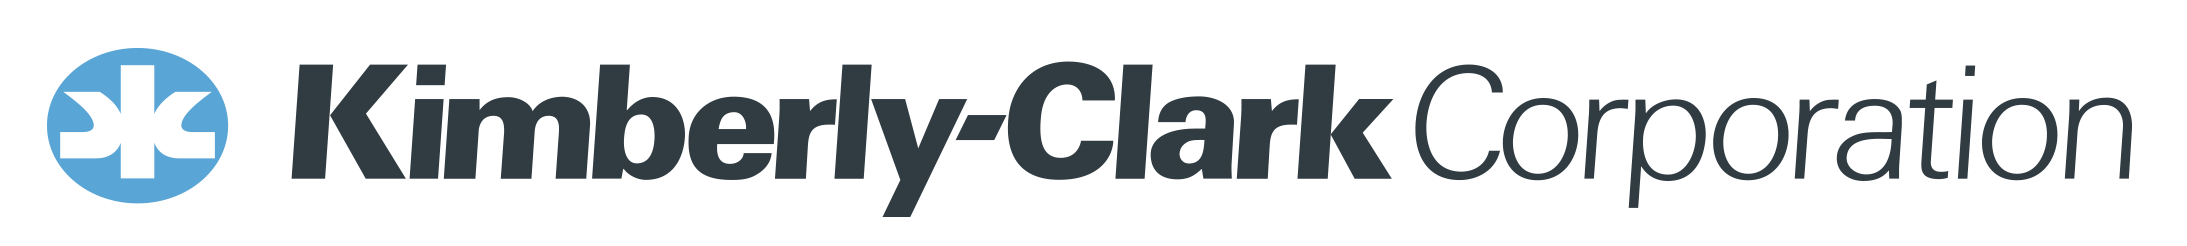 Kimberly-Clark Corporation MLT Partner Logo